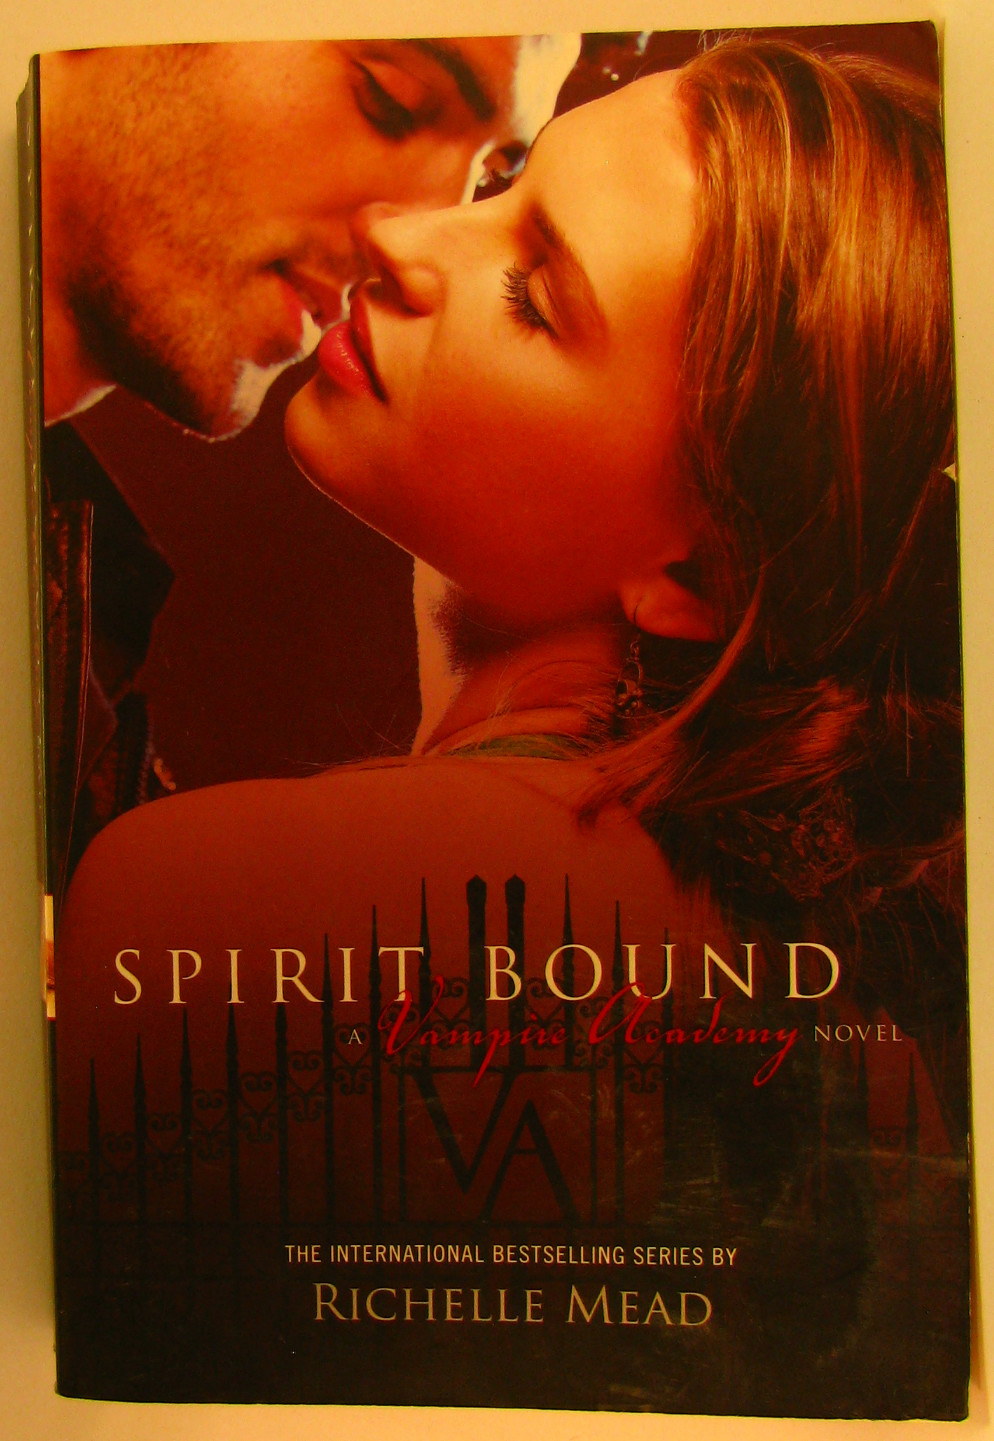 Spirit Bound by Richelle Mead